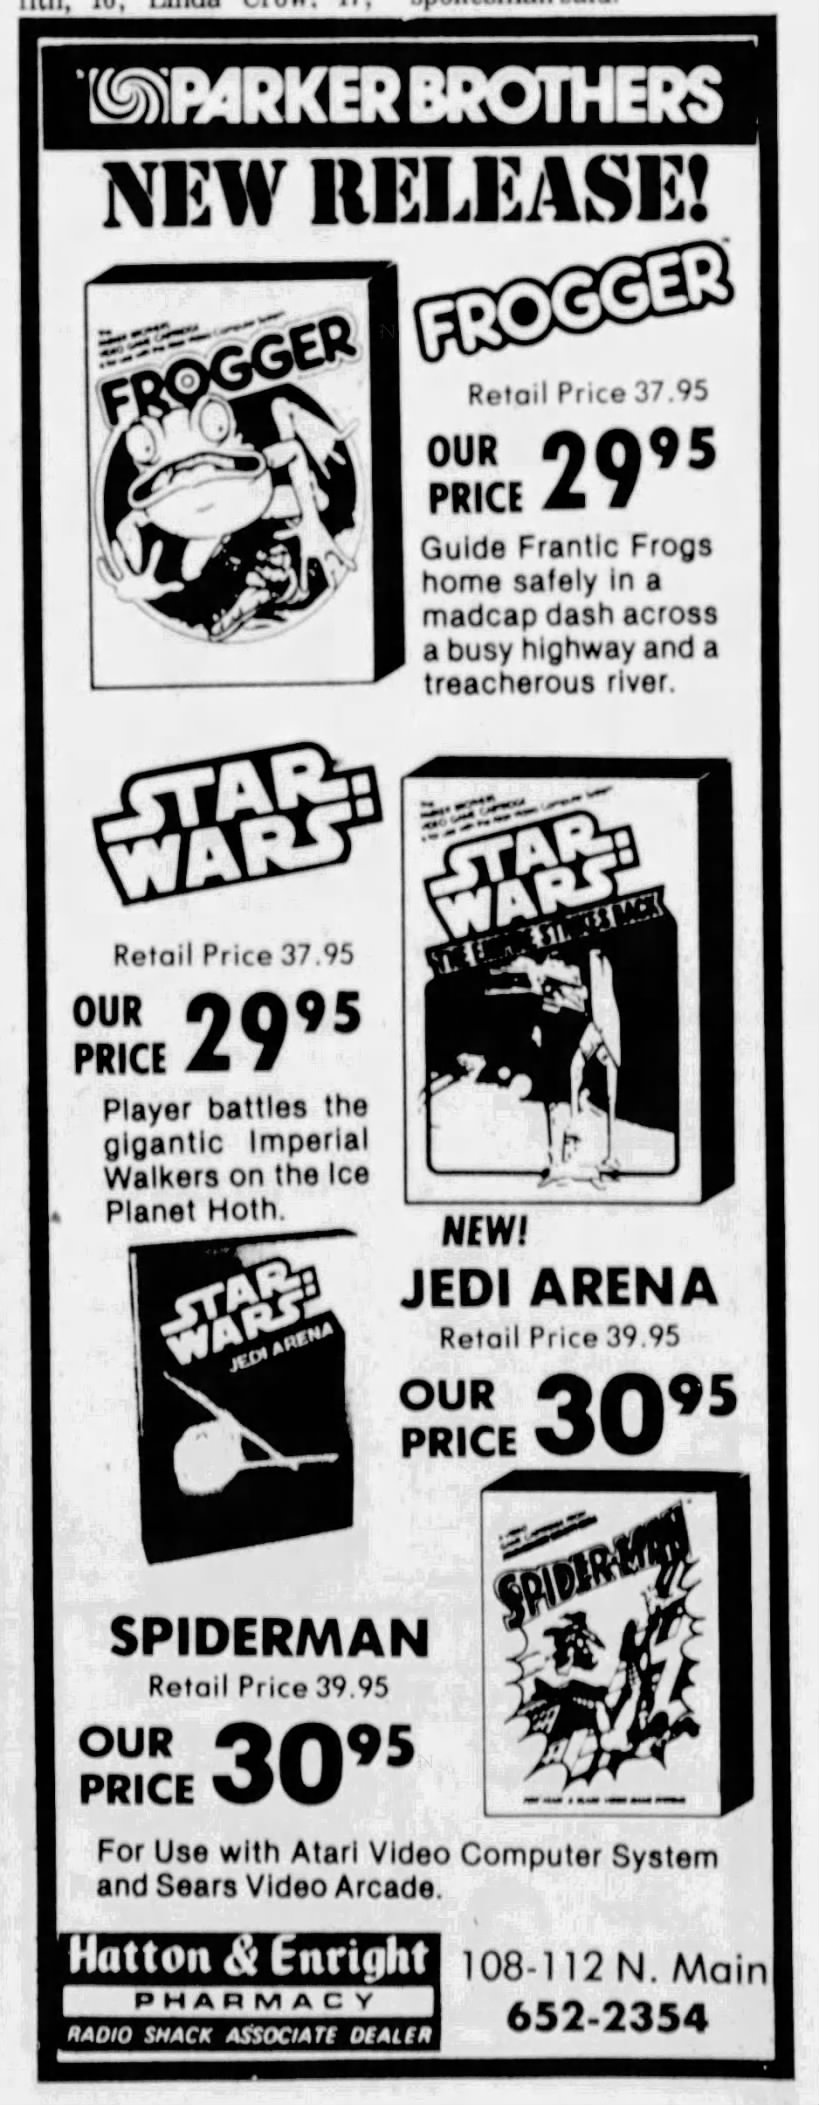 Atari 2600: Jedi Arena $30.95 NEW! (Feb 14, 83)